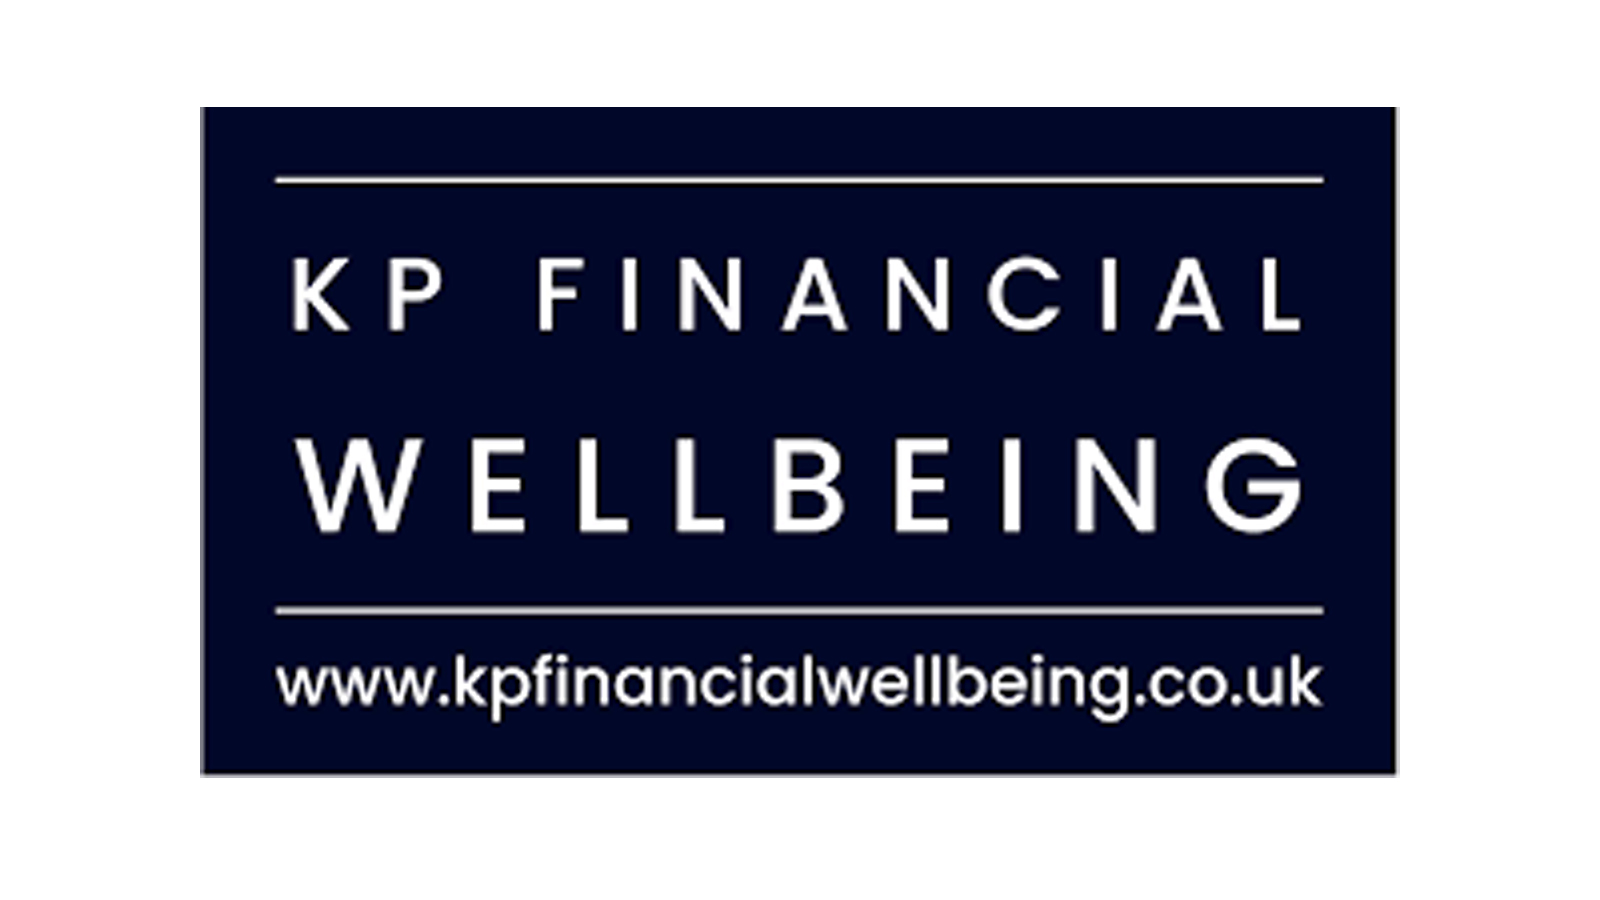 KP Financial Wellbeing